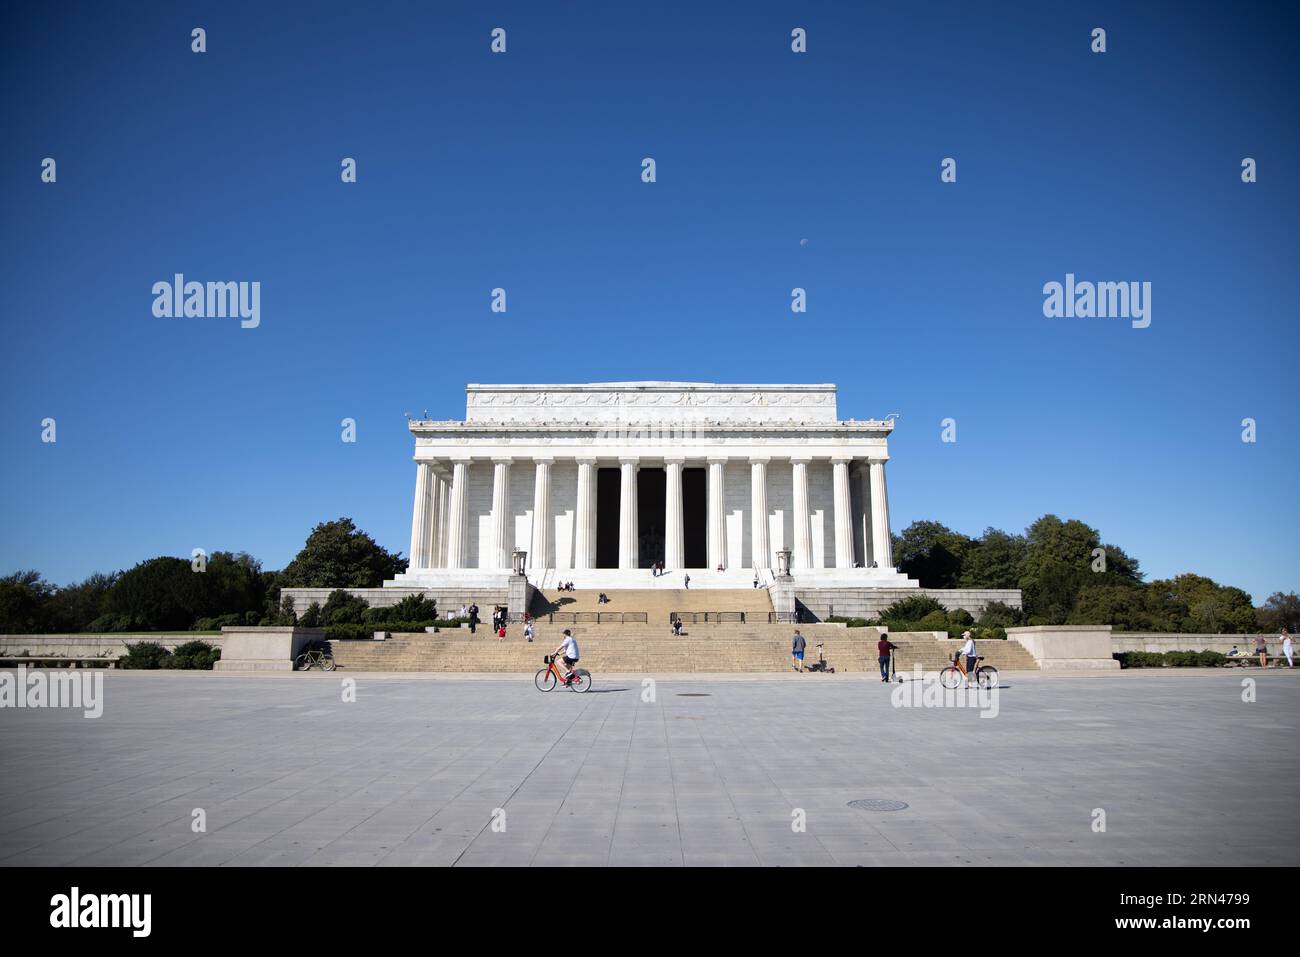 WASHINGTON DC, Stati Uniti - il Lincoln Memorial, dedicato ad Abraham Lincoln, il sedicesimo presidente degli Stati Uniti, si erge come un punto di riferimento iconico sul National Mall. Simboleggia l'impegno della nazione per l'unità e l'uguaglianza, con la figura di Lincoln che presiede il Reflecting Pool e le iscrizioni dei suoi famosi discorsi incise sulle sue pareti. Foto Stock